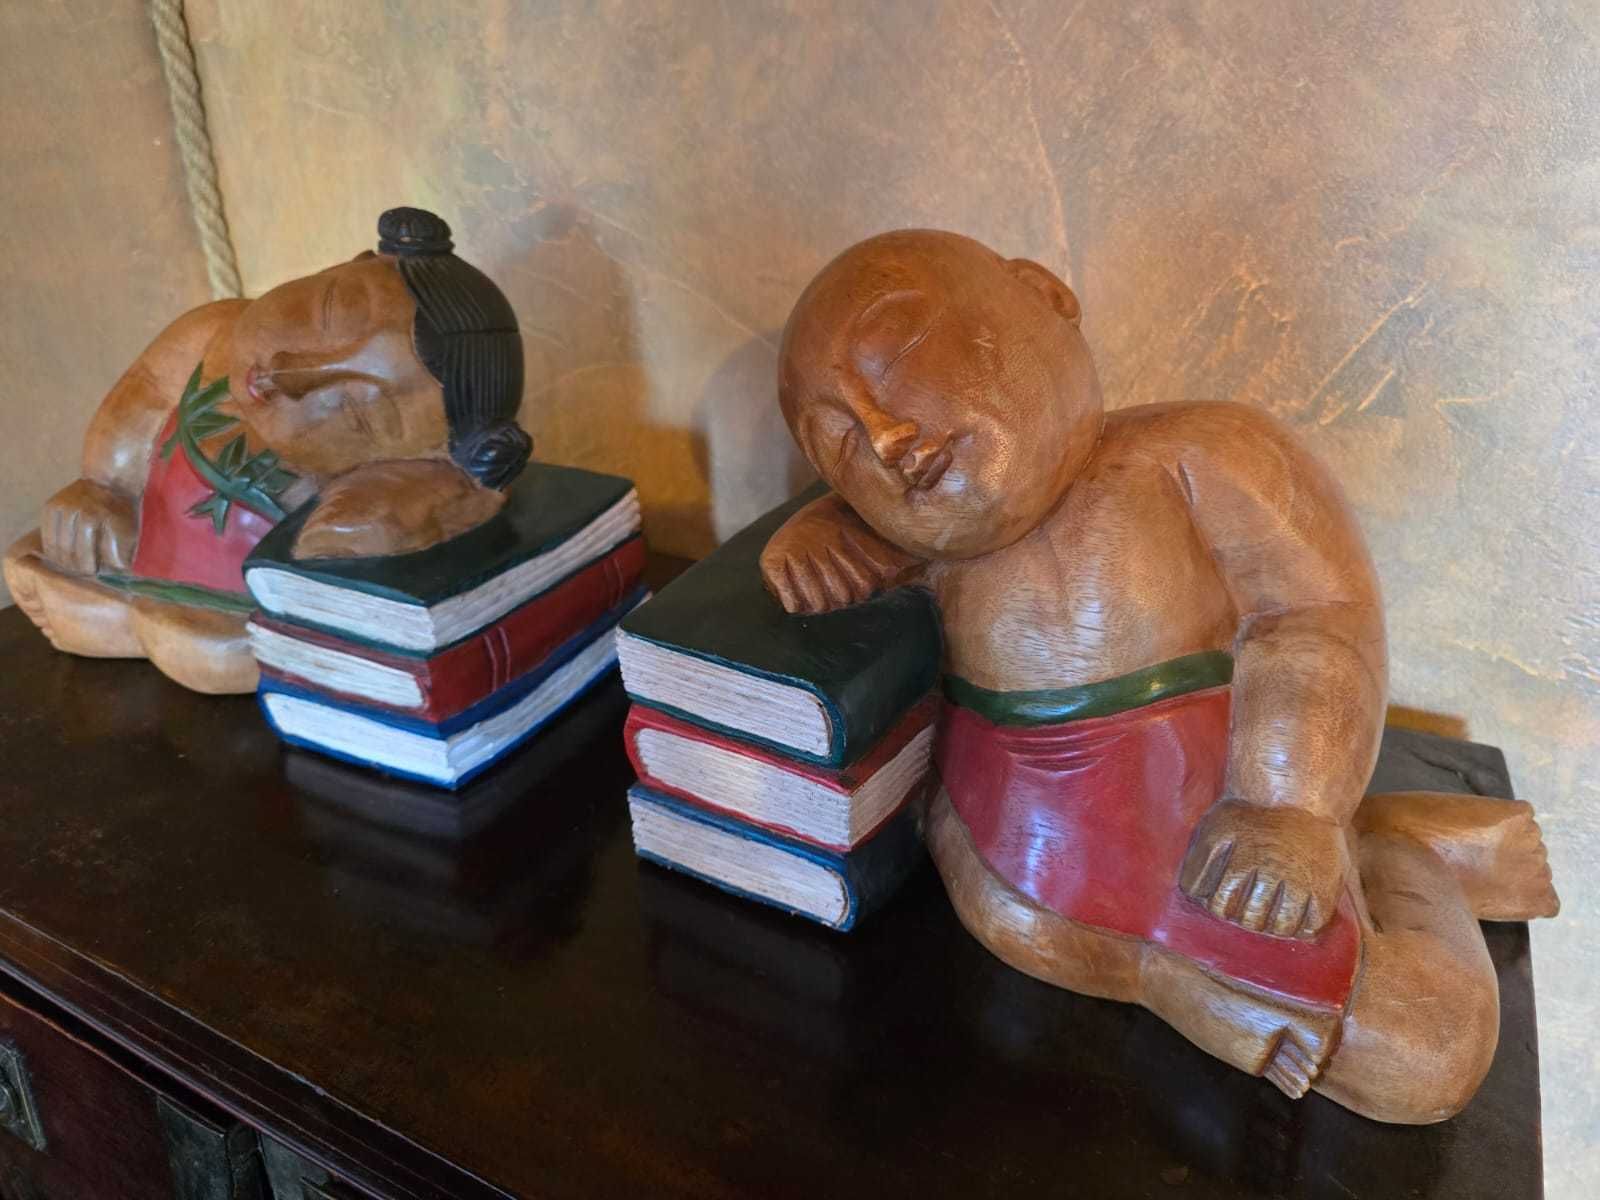 Rzeźby z Indonezji (dzieci śpiące na książkach)